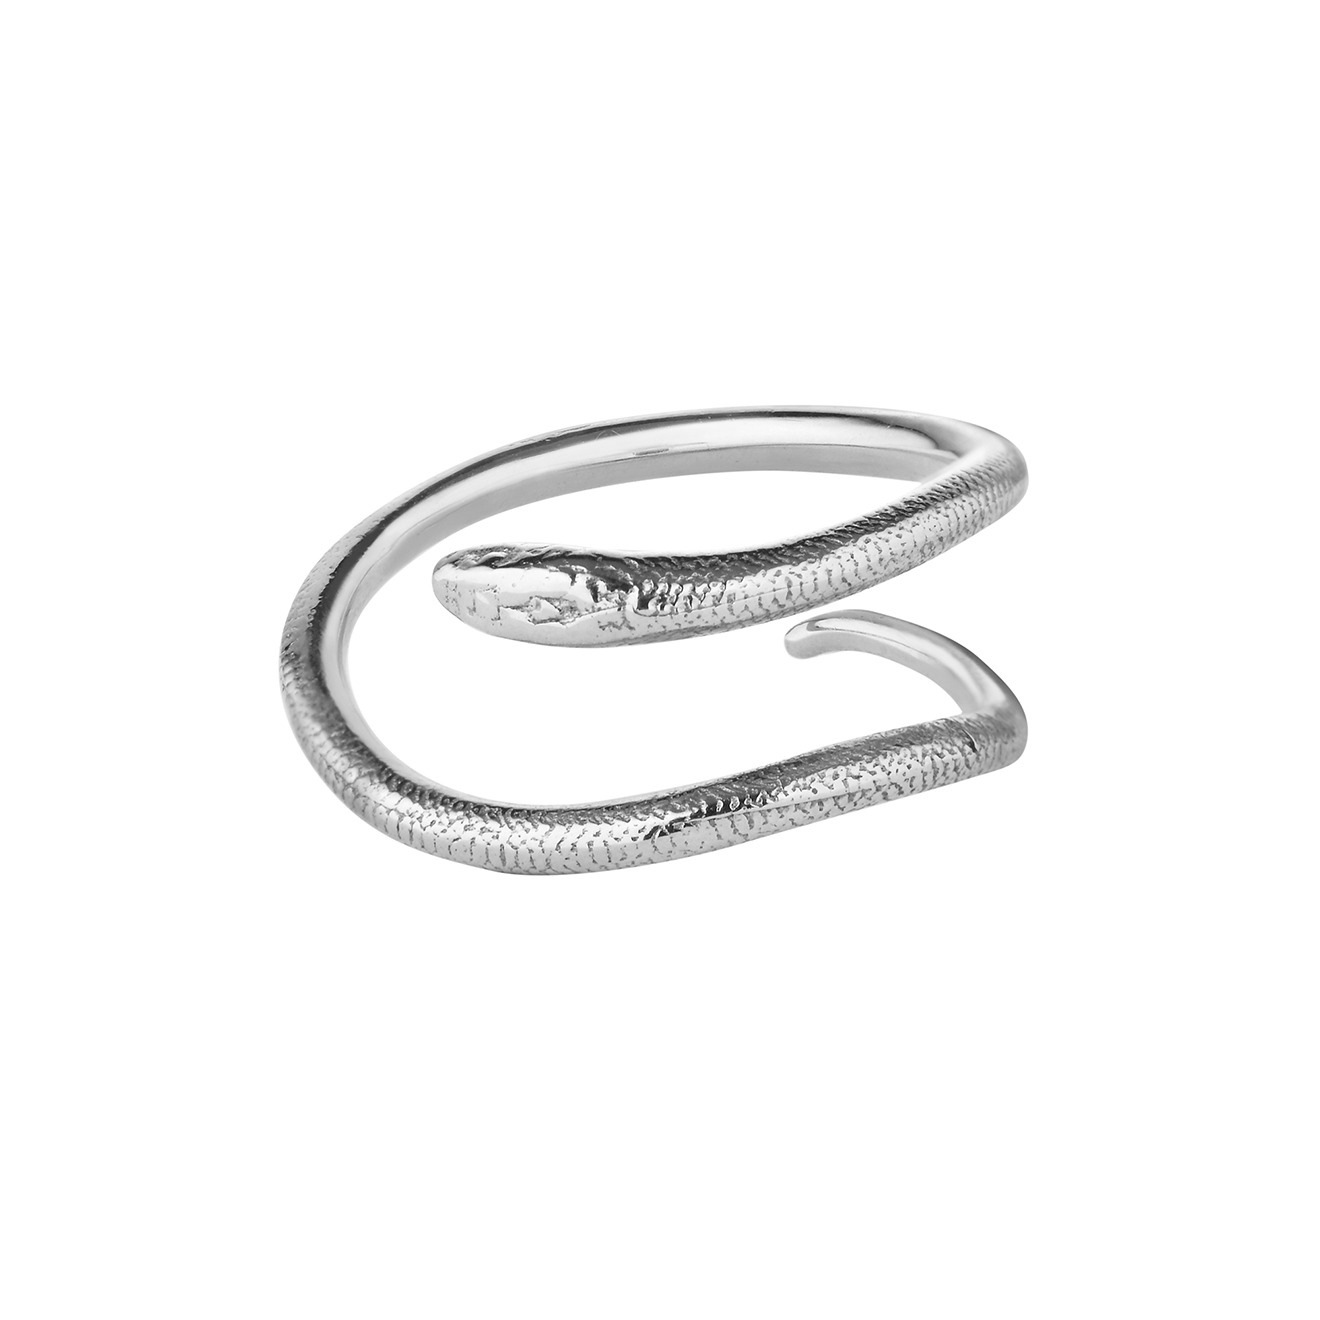 Ms. Marble Кольцо-змея из серебра Awakening ms marble двойное позолоченное кольцо из серебра karma